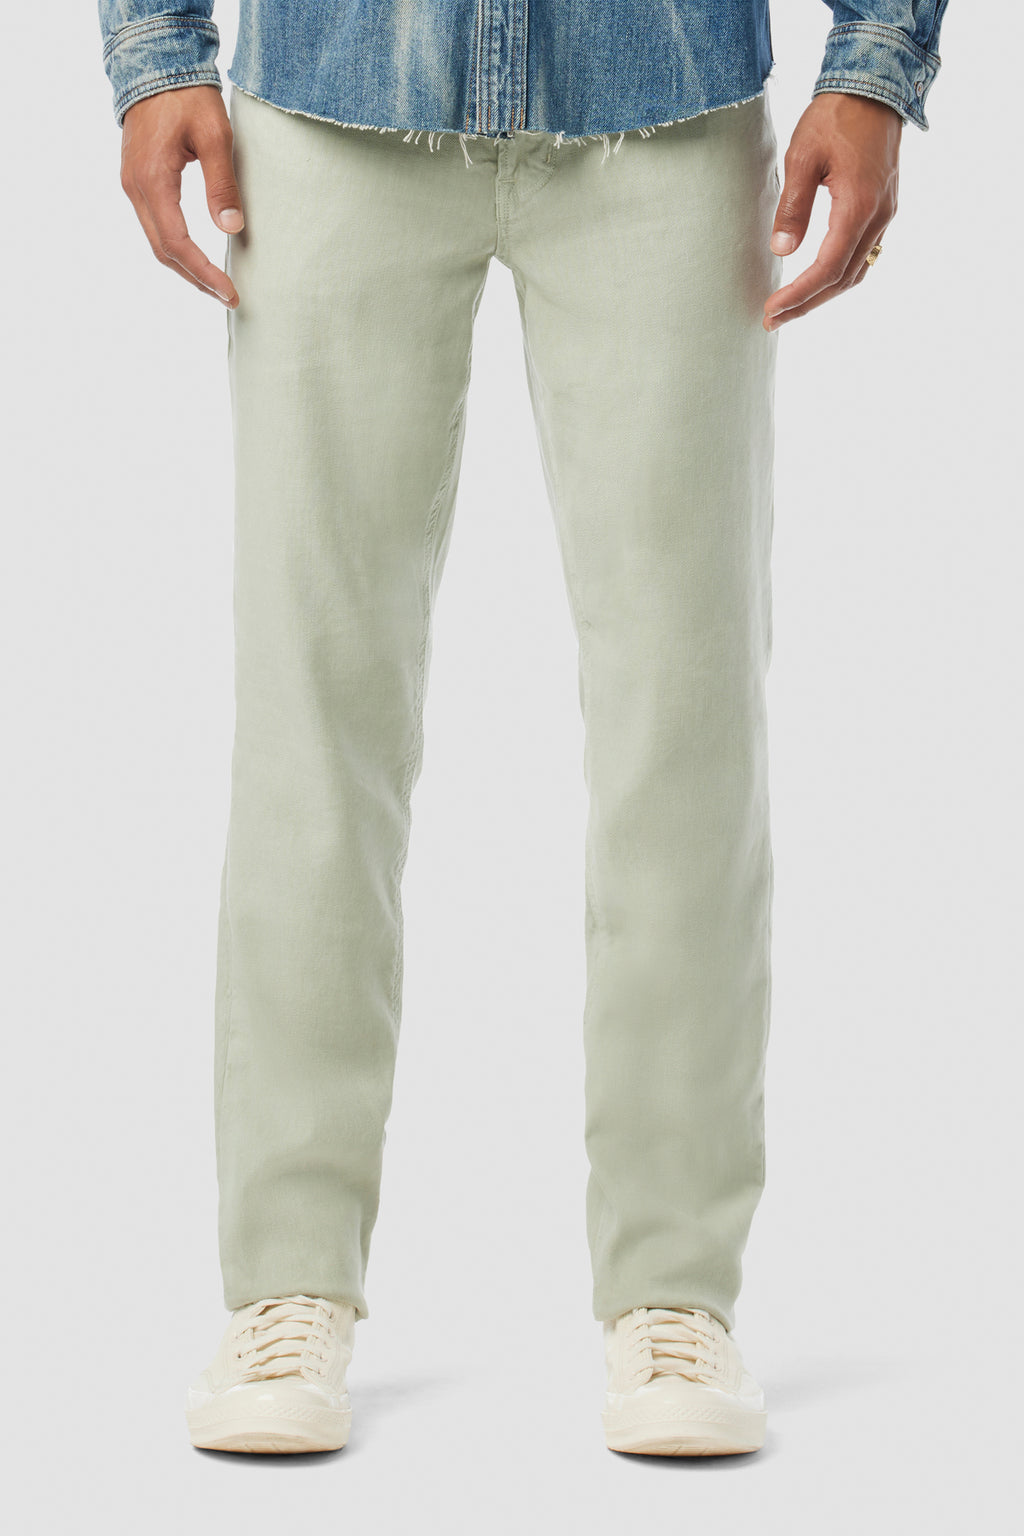 Shop Men's Pants at Hudson Jeans